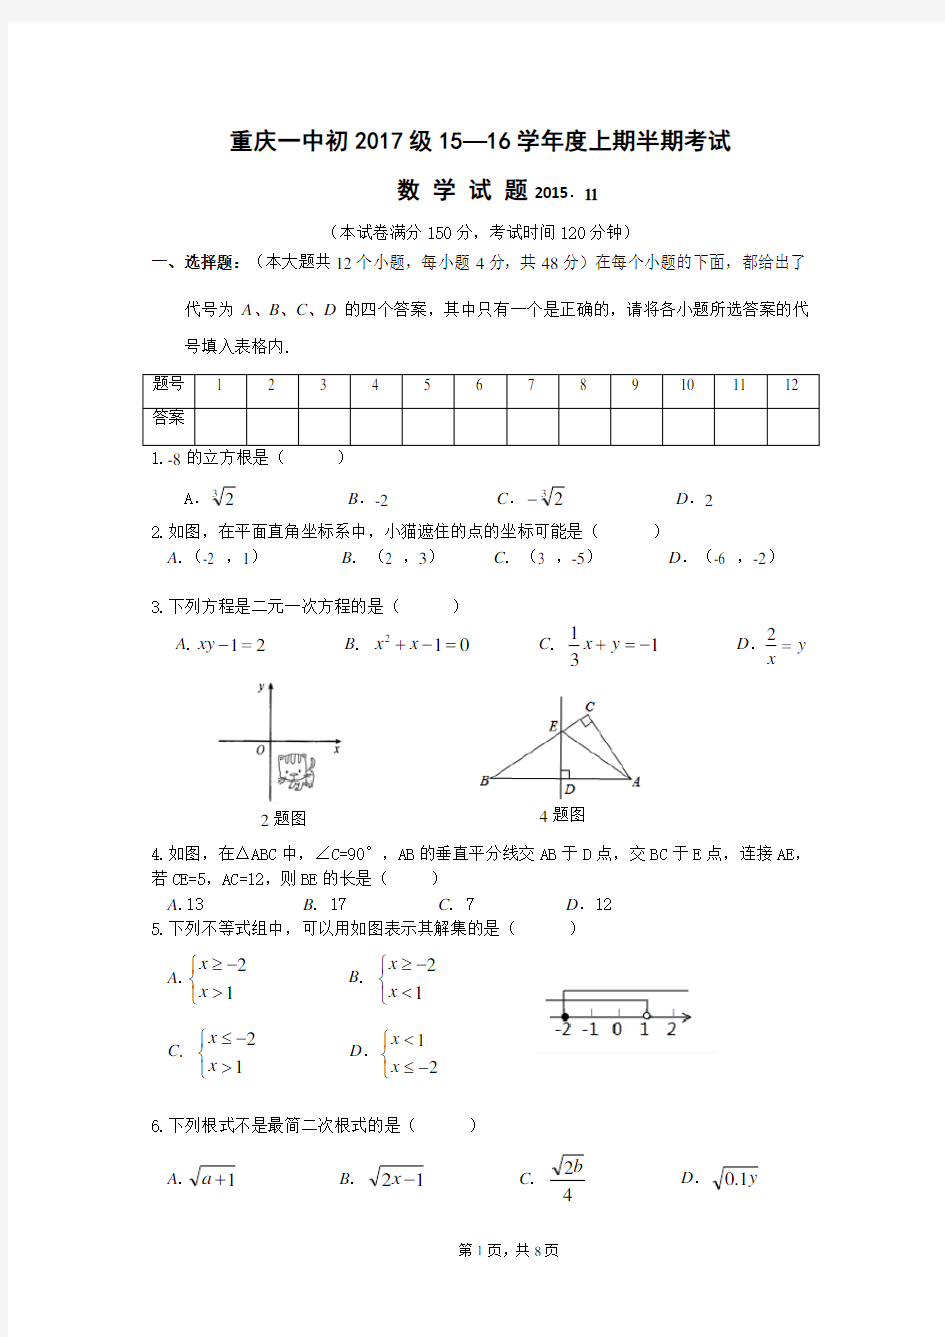 重庆一中初2017级八年级数学上半期考试